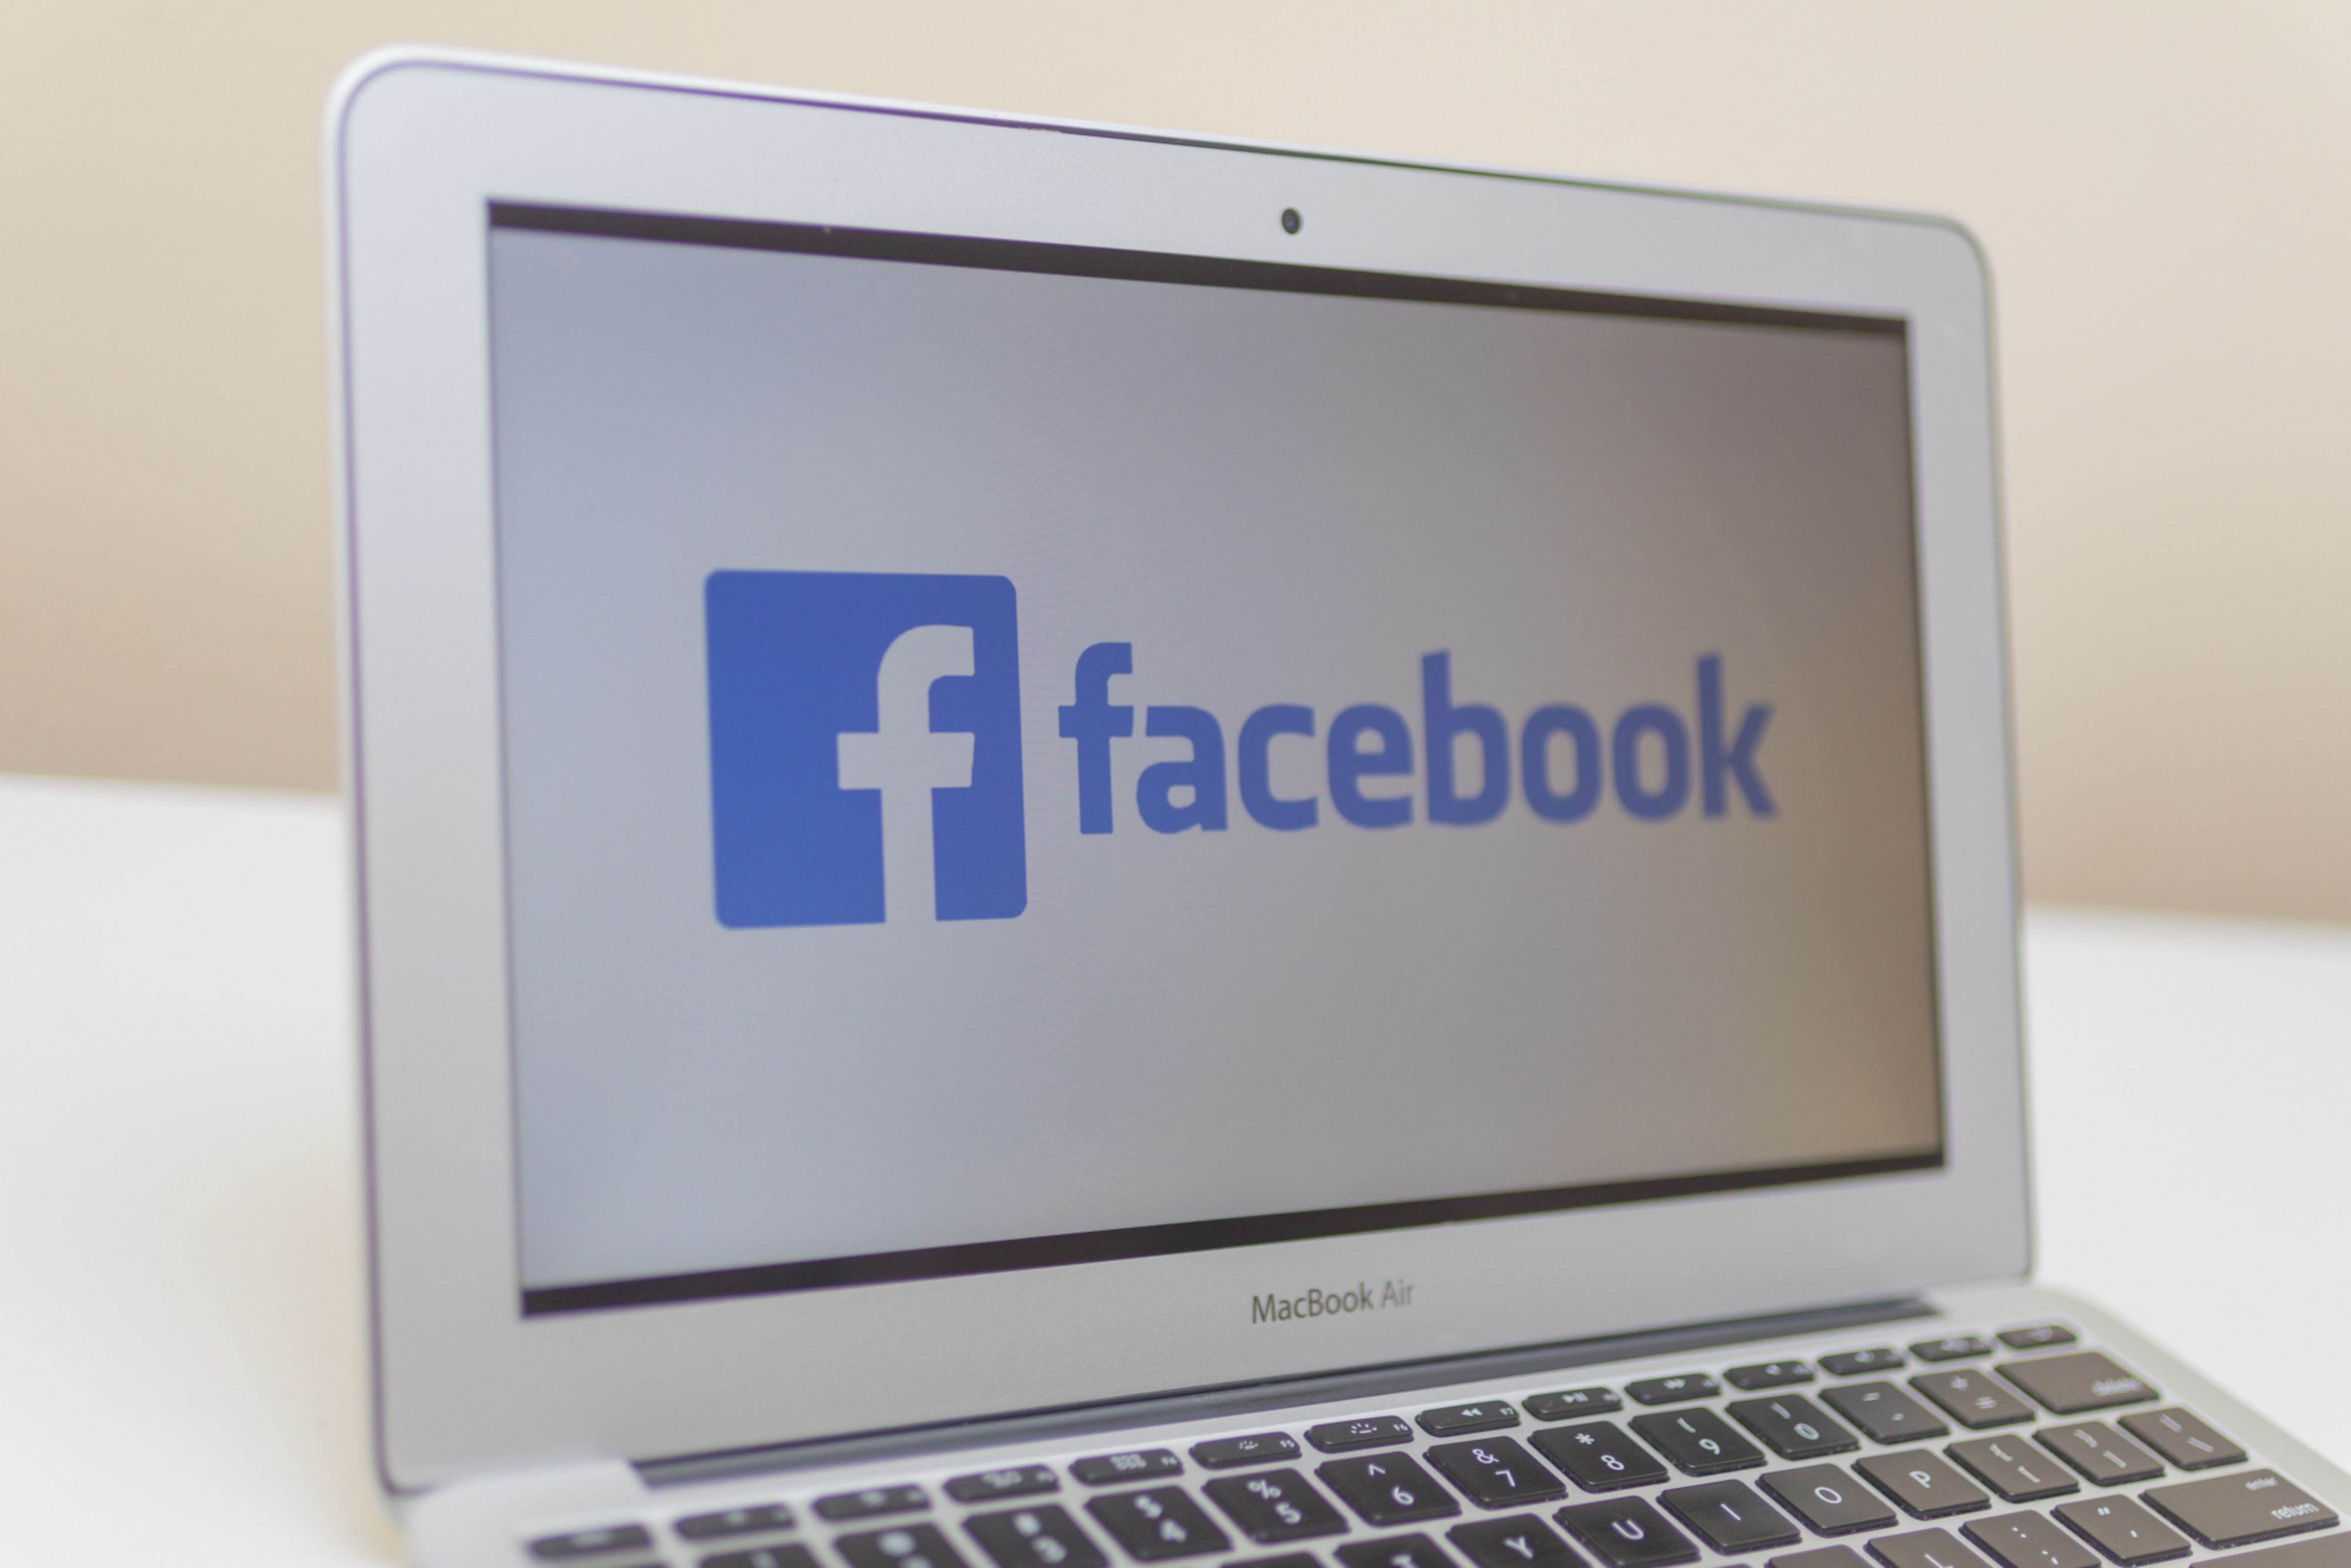 Facebook enfrenta demandas por tráfico sexual en su plataforma